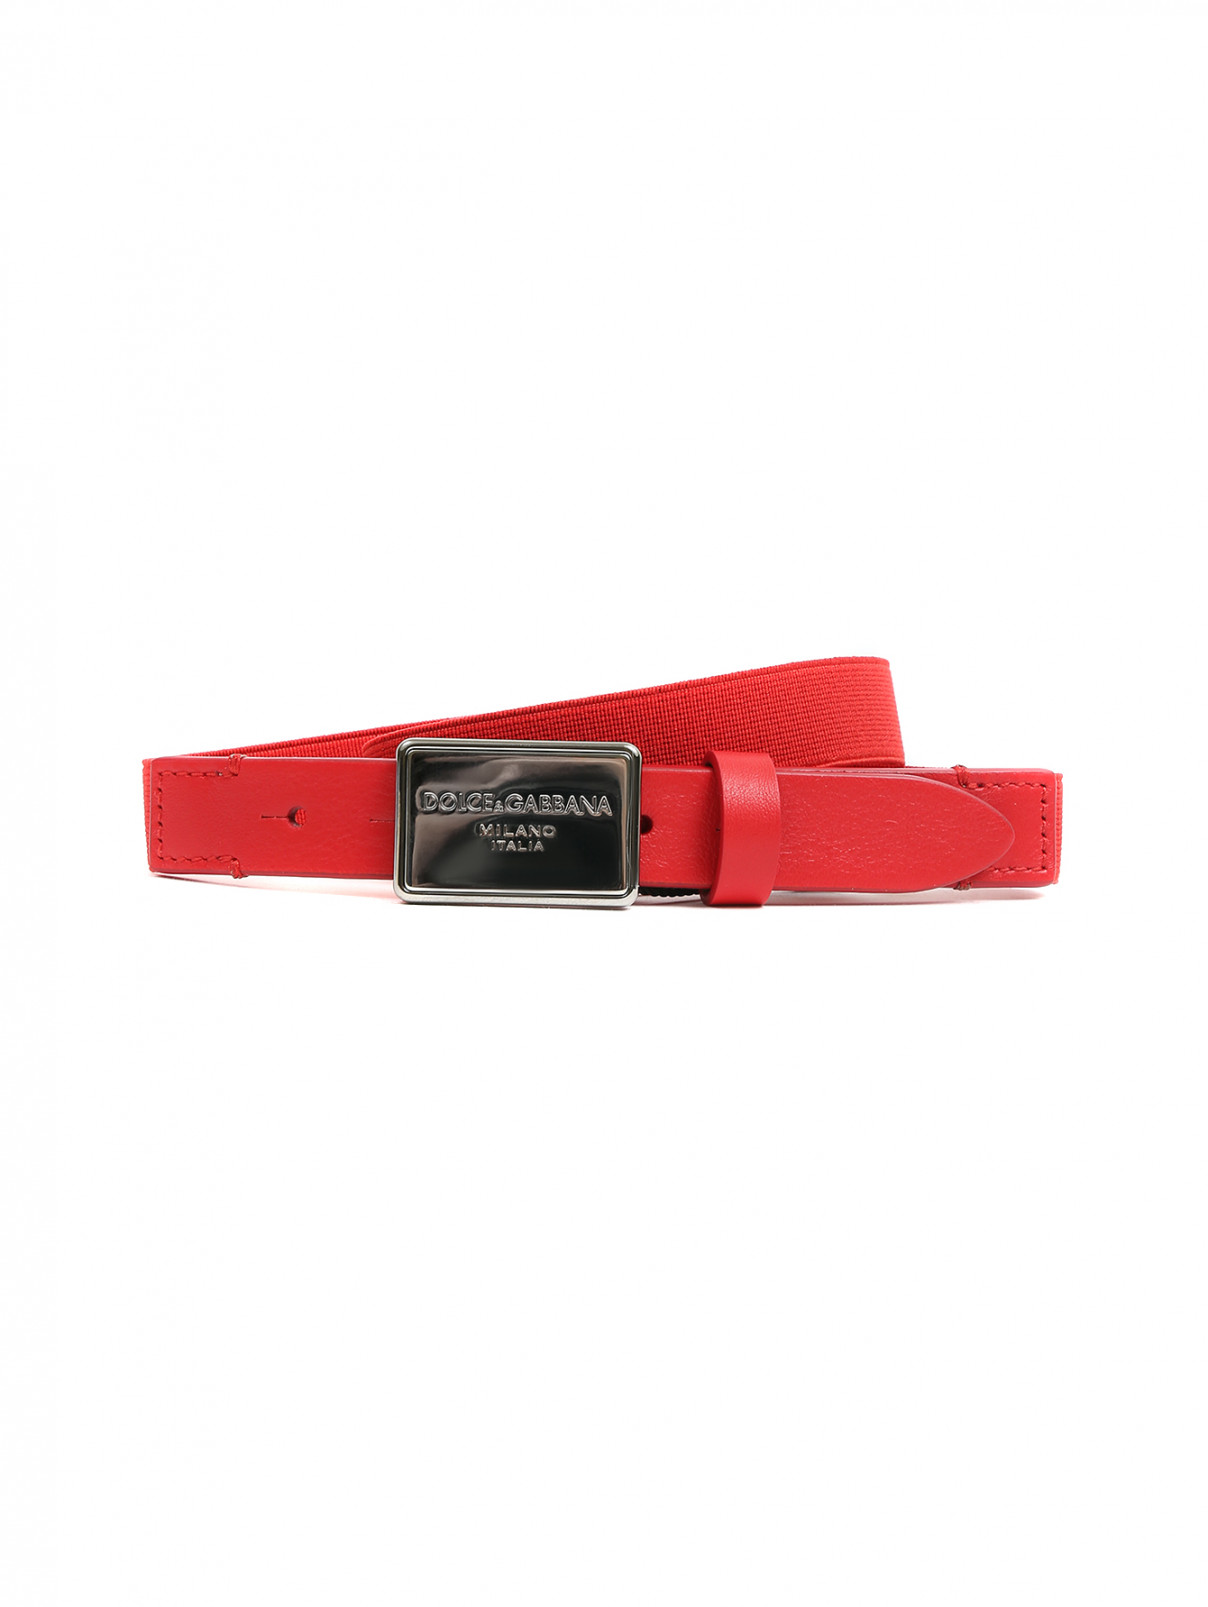 Ремень на резинке с металлической пряжкой Dolce & Gabbana  –  Общий вид  – Цвет:  Красный